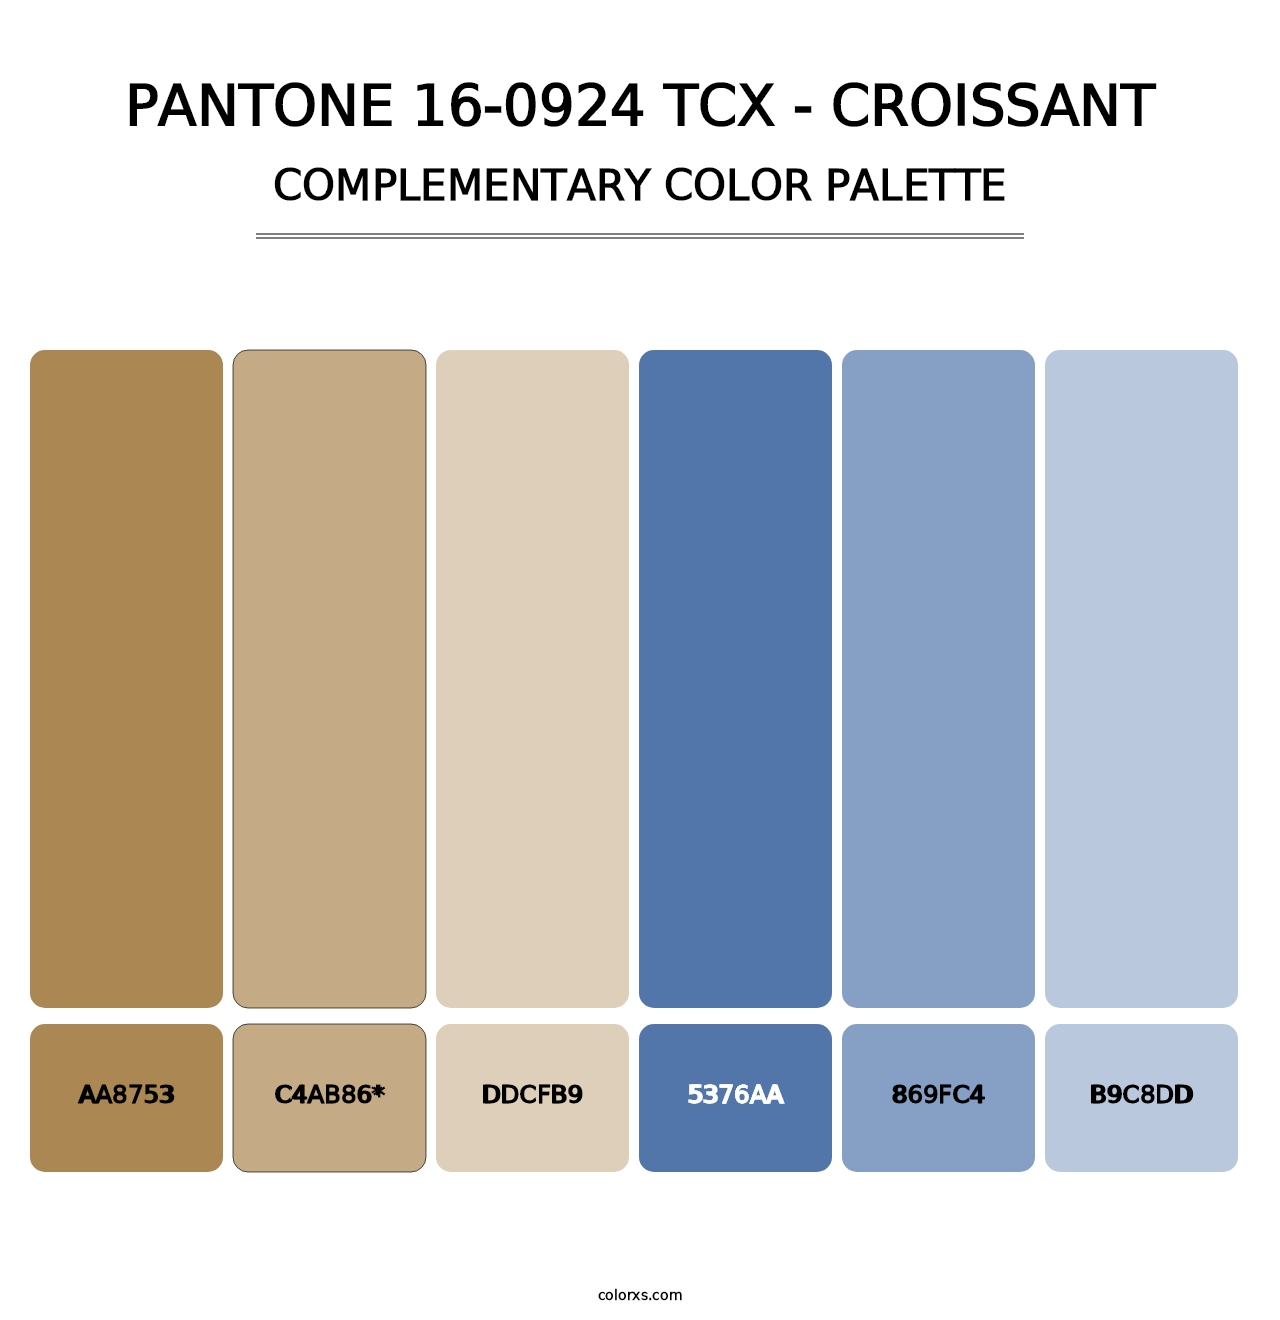 PANTONE 16-0924 TCX - Croissant - Complementary Color Palette